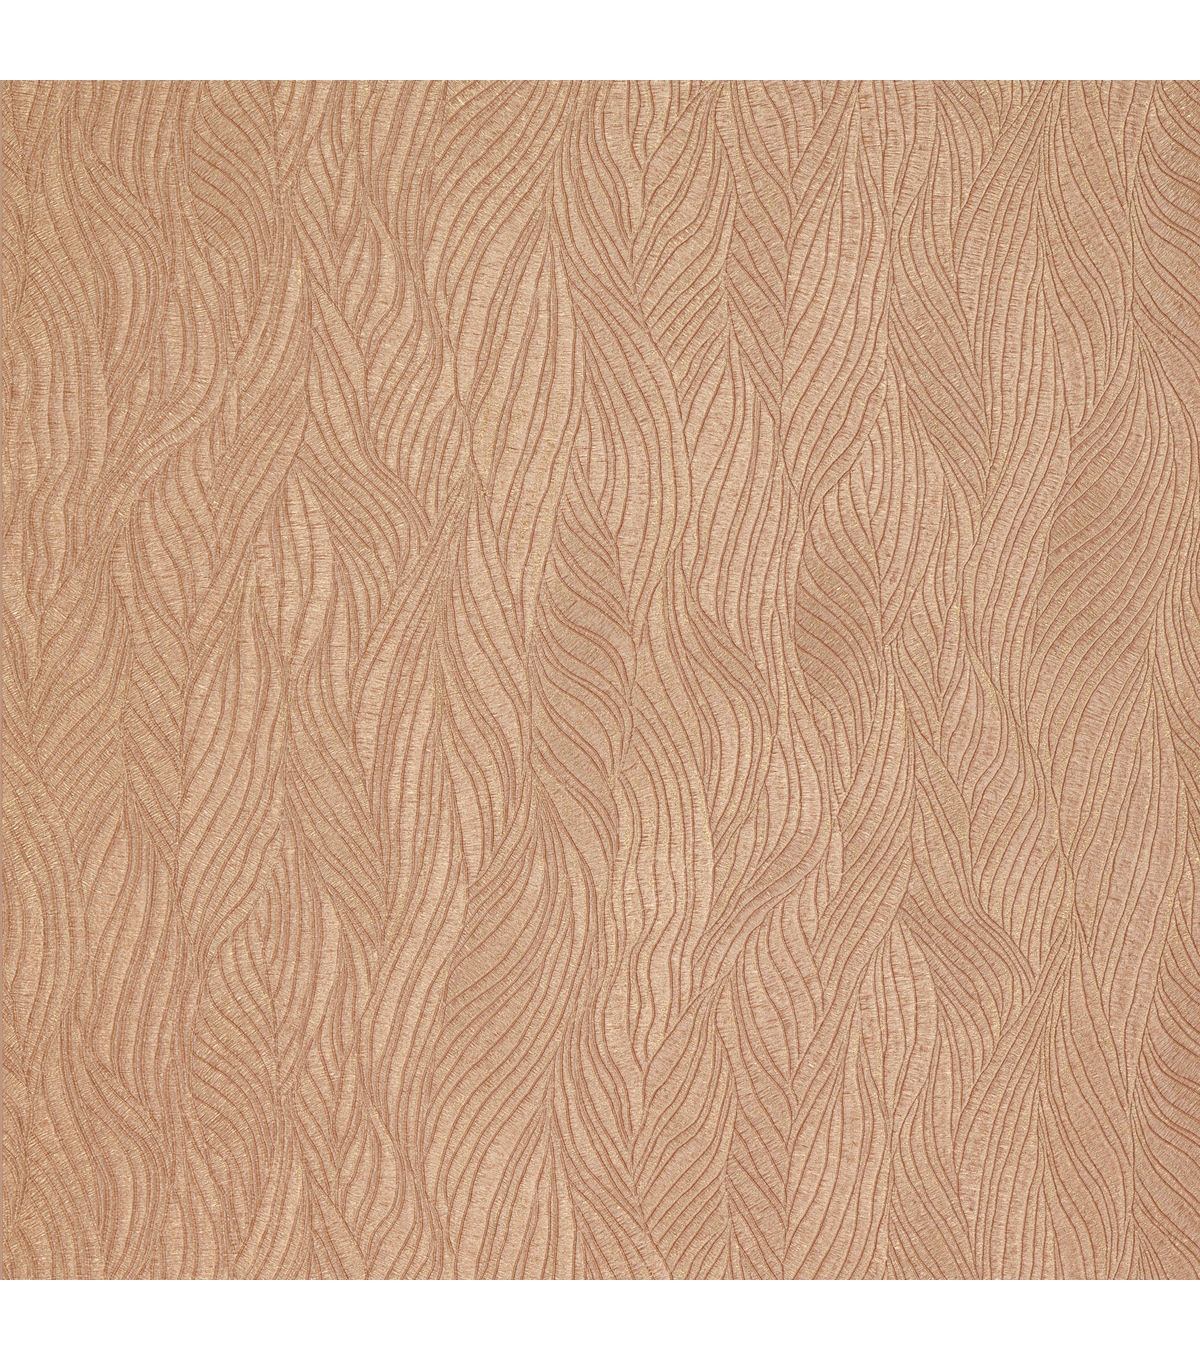 Copper Swirling Texture Wallpaper SampleNephi Copper Swirling Texture